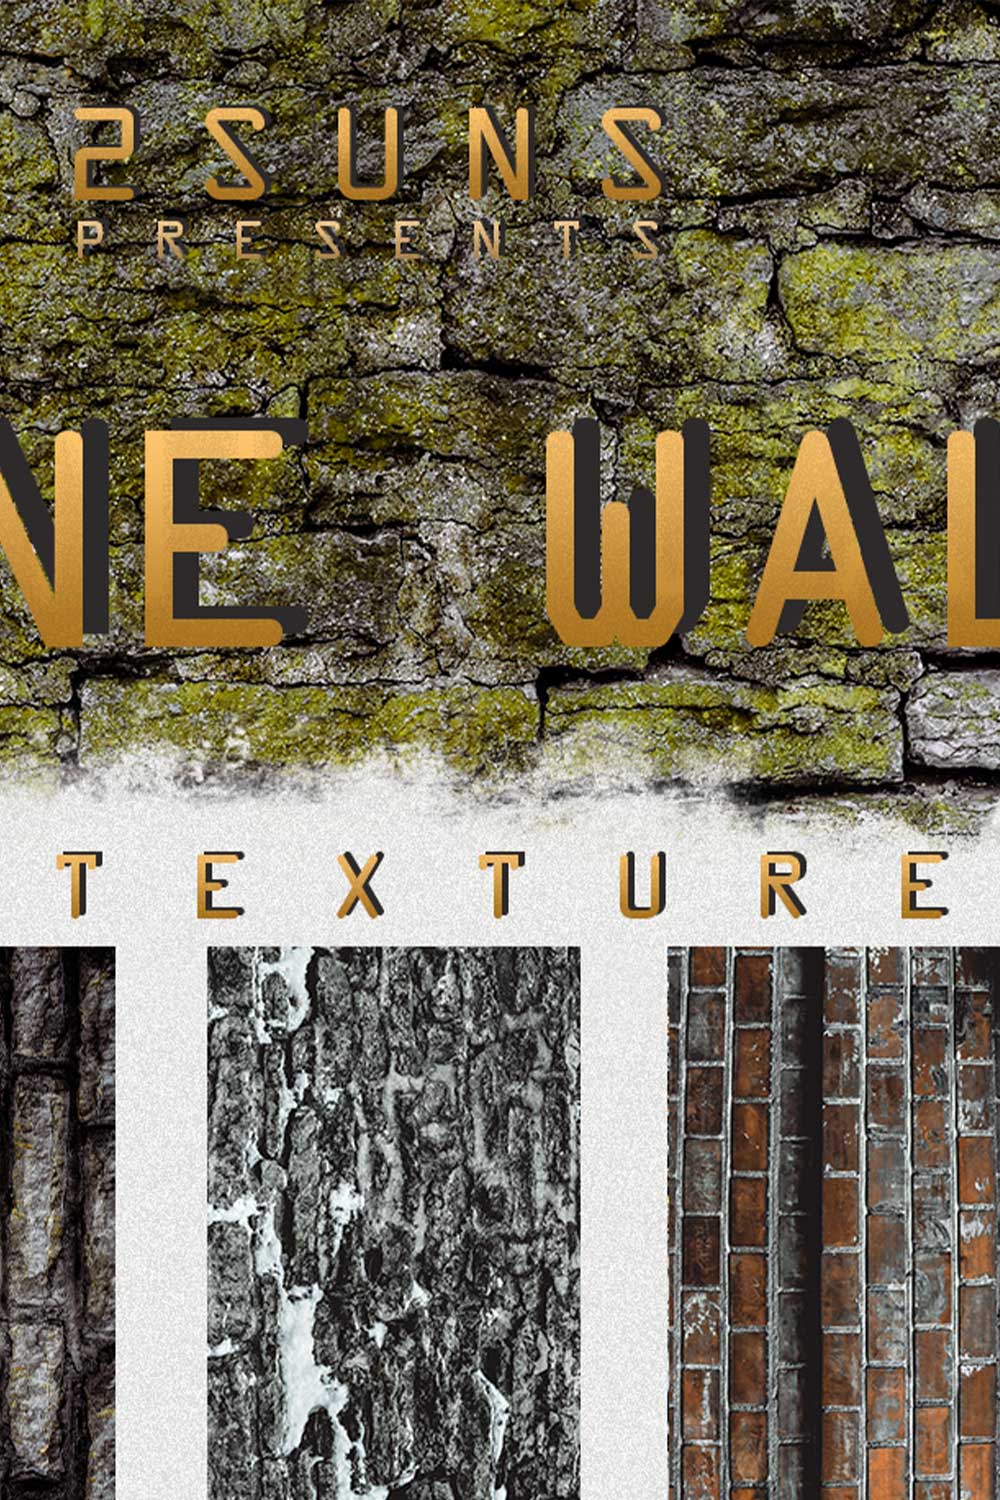 Vintage Grunge Brick Wall Digital Backdrop Pinterest Image.